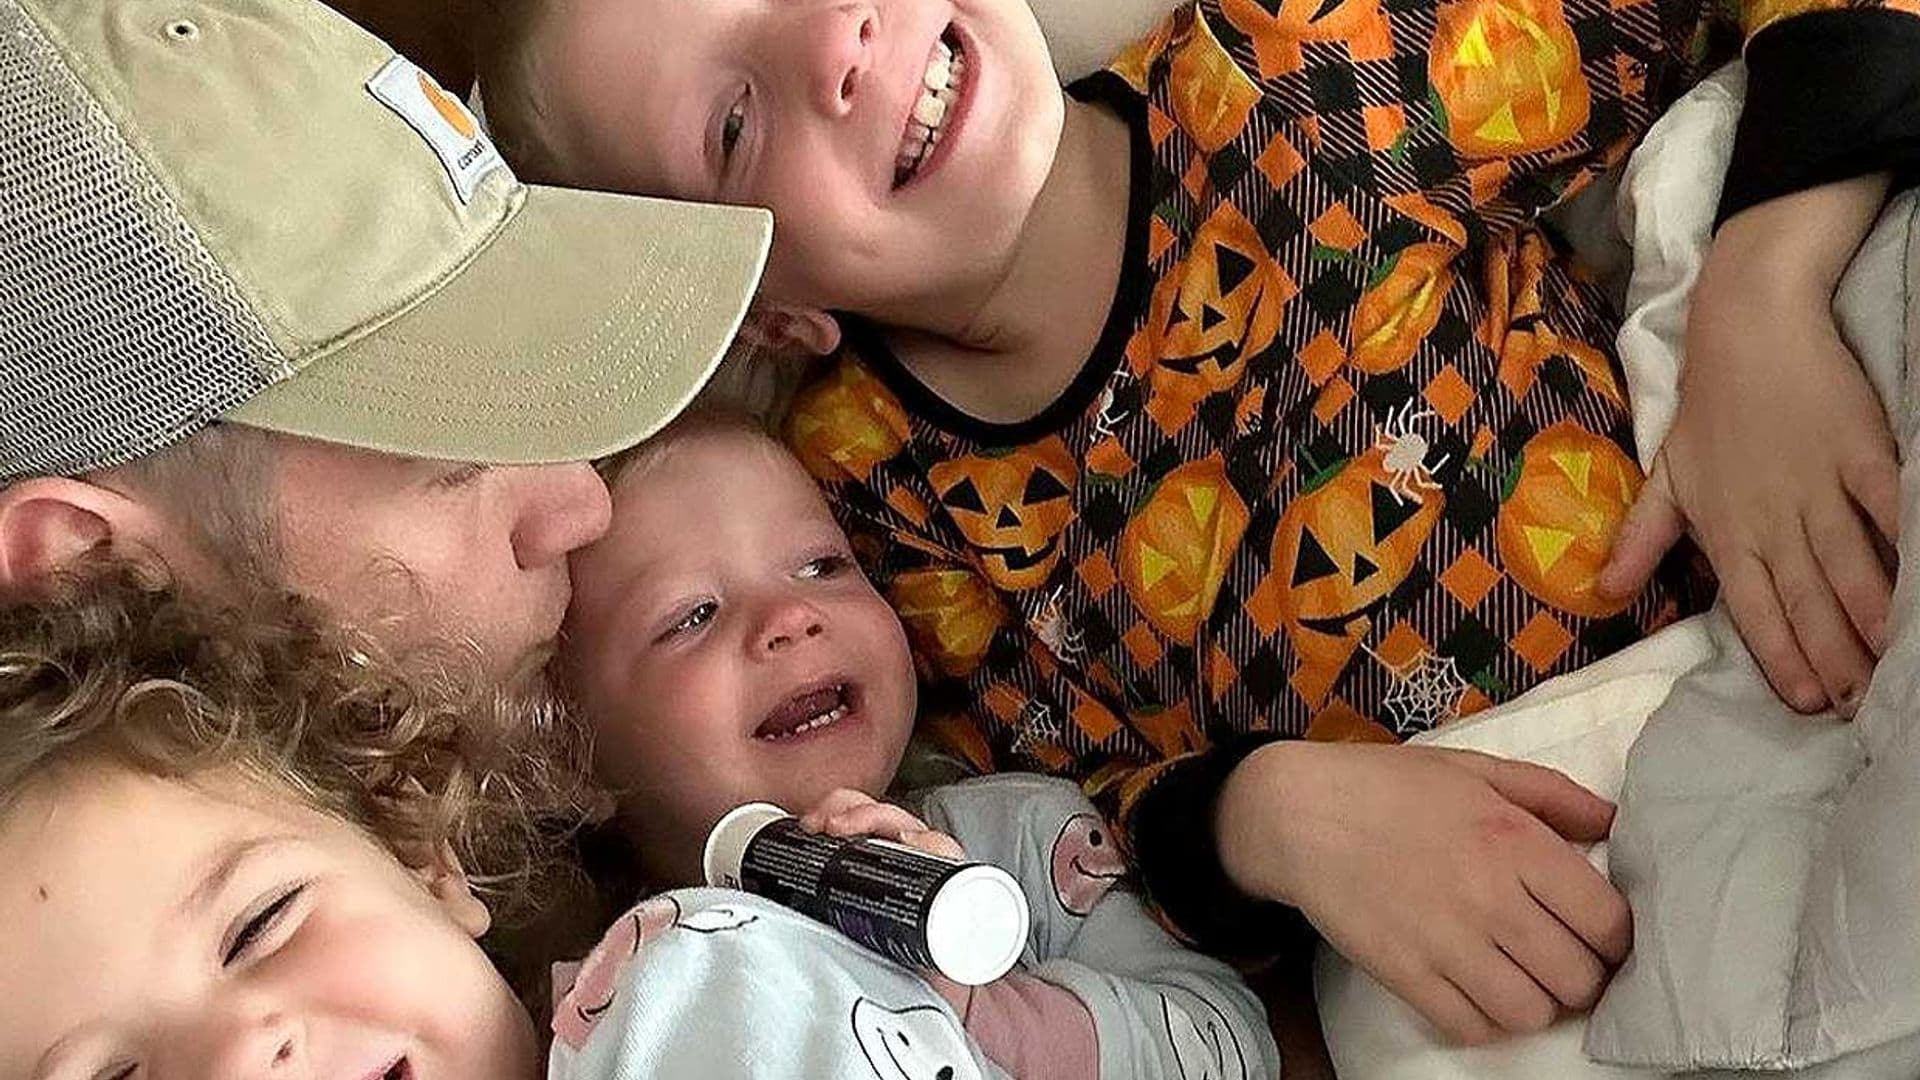 'Qué bien estar junto a ellos' Nick Carter se refugia en sus hijos tras trágica pérdida de su hermano Aaron